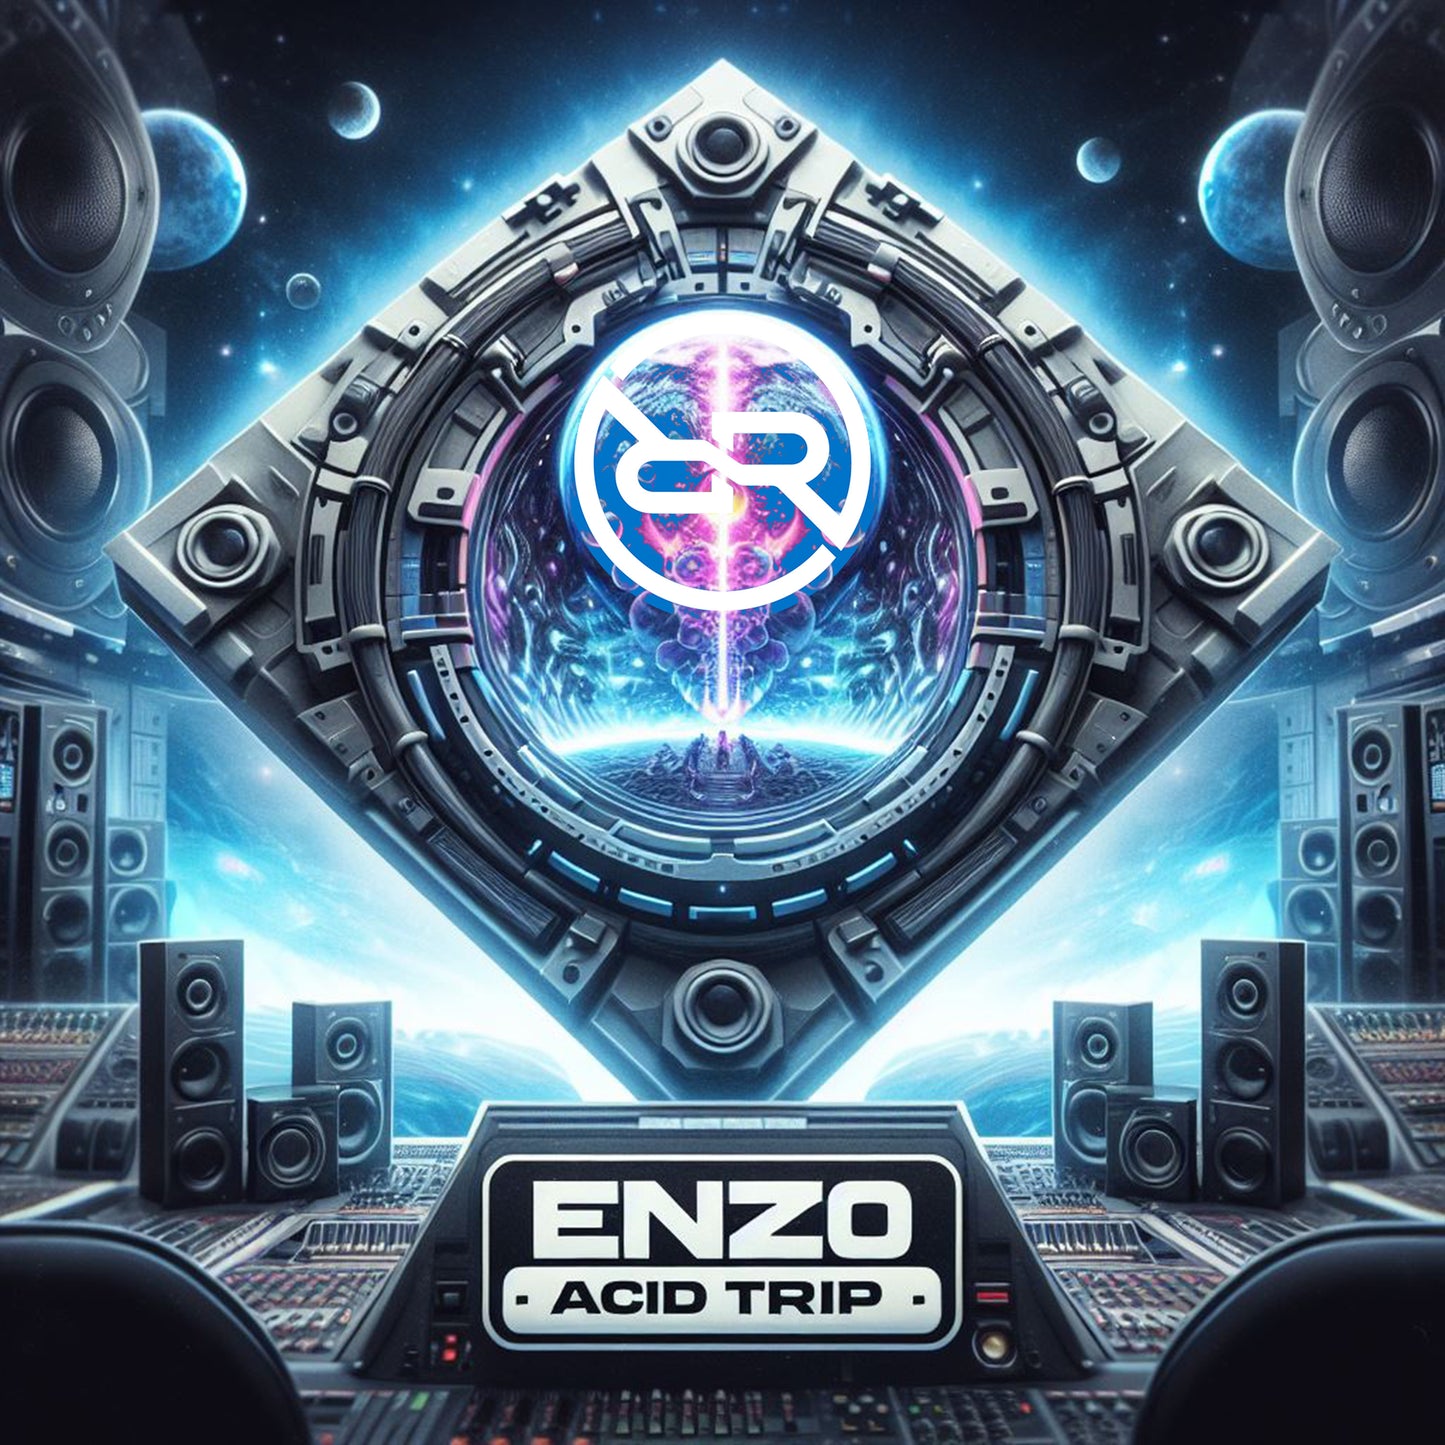 Enzo - Acid Trip